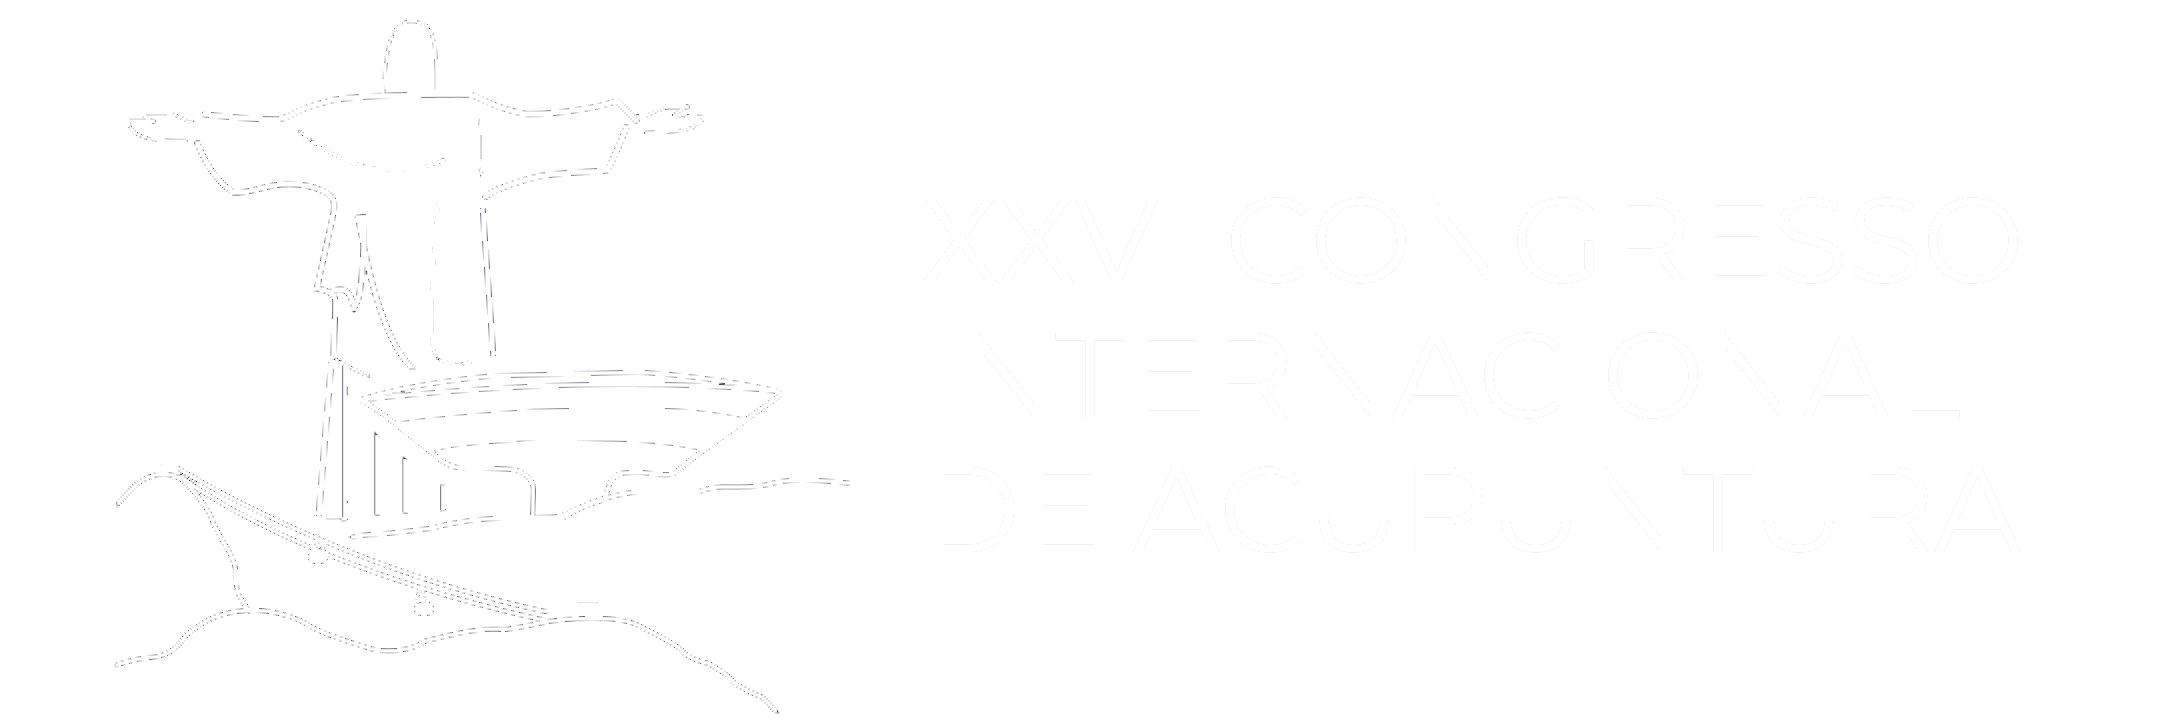 XXVI Congresso internacional de acupuntura